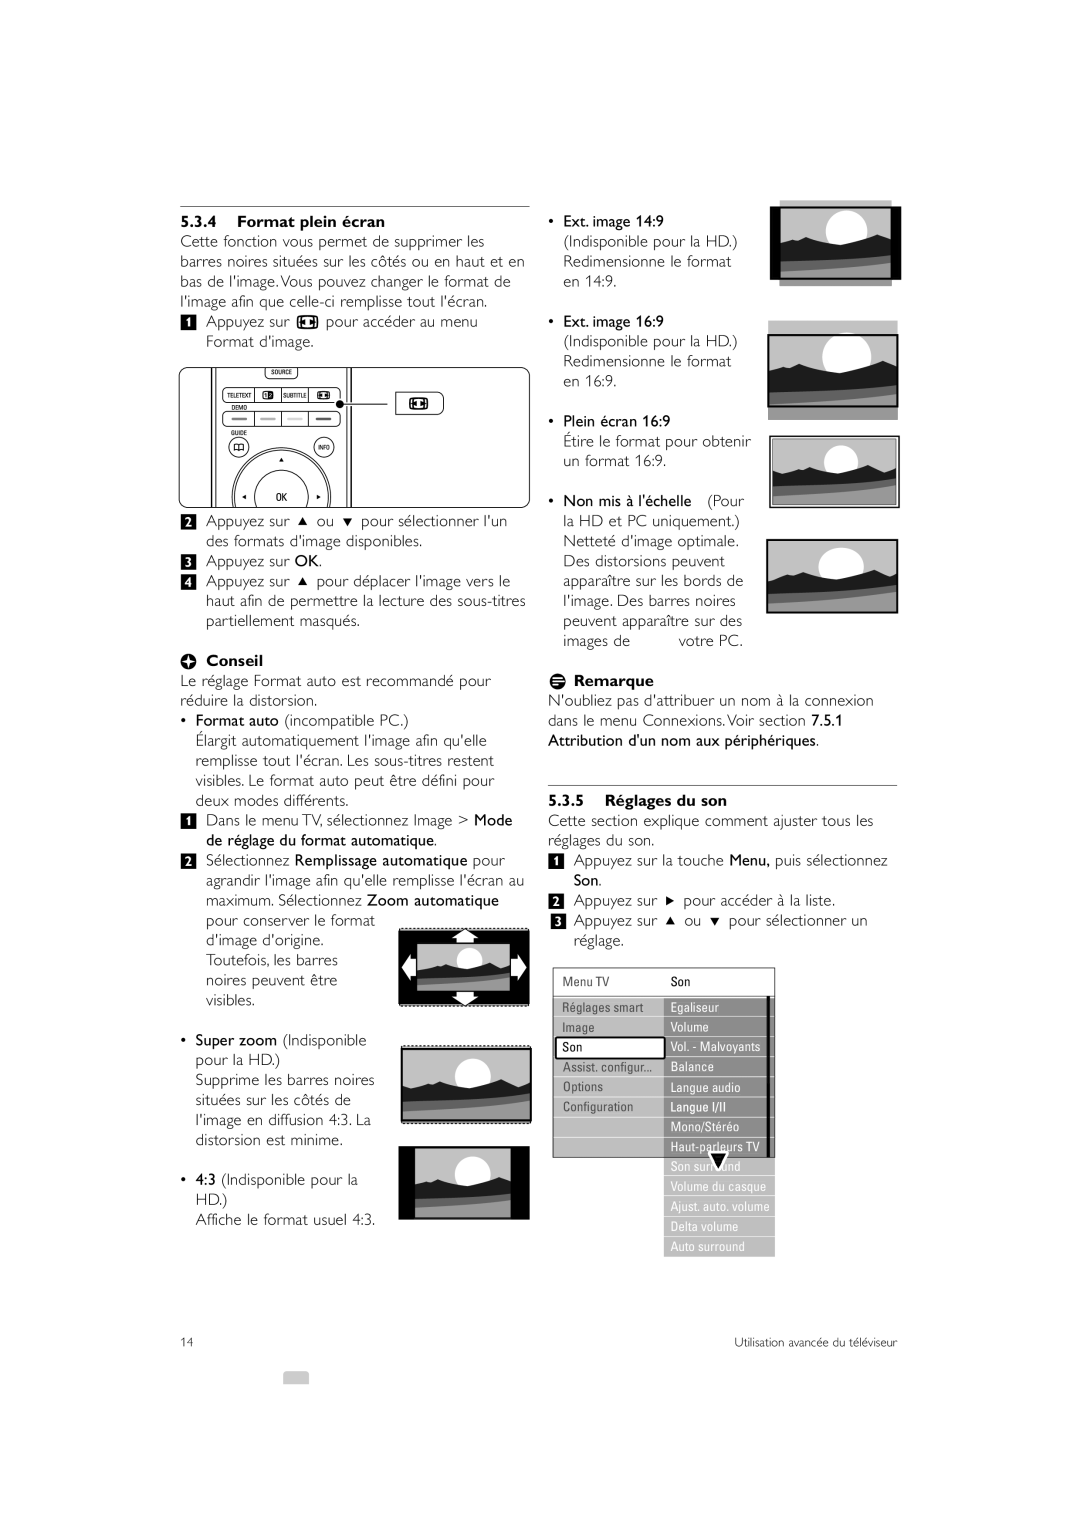 Philips 47PFL7403 Format plein écran, à Conseil, 5.3.5 Réglages du son, ‡ Appuyez sur q pour accéder au menu Format dimage 